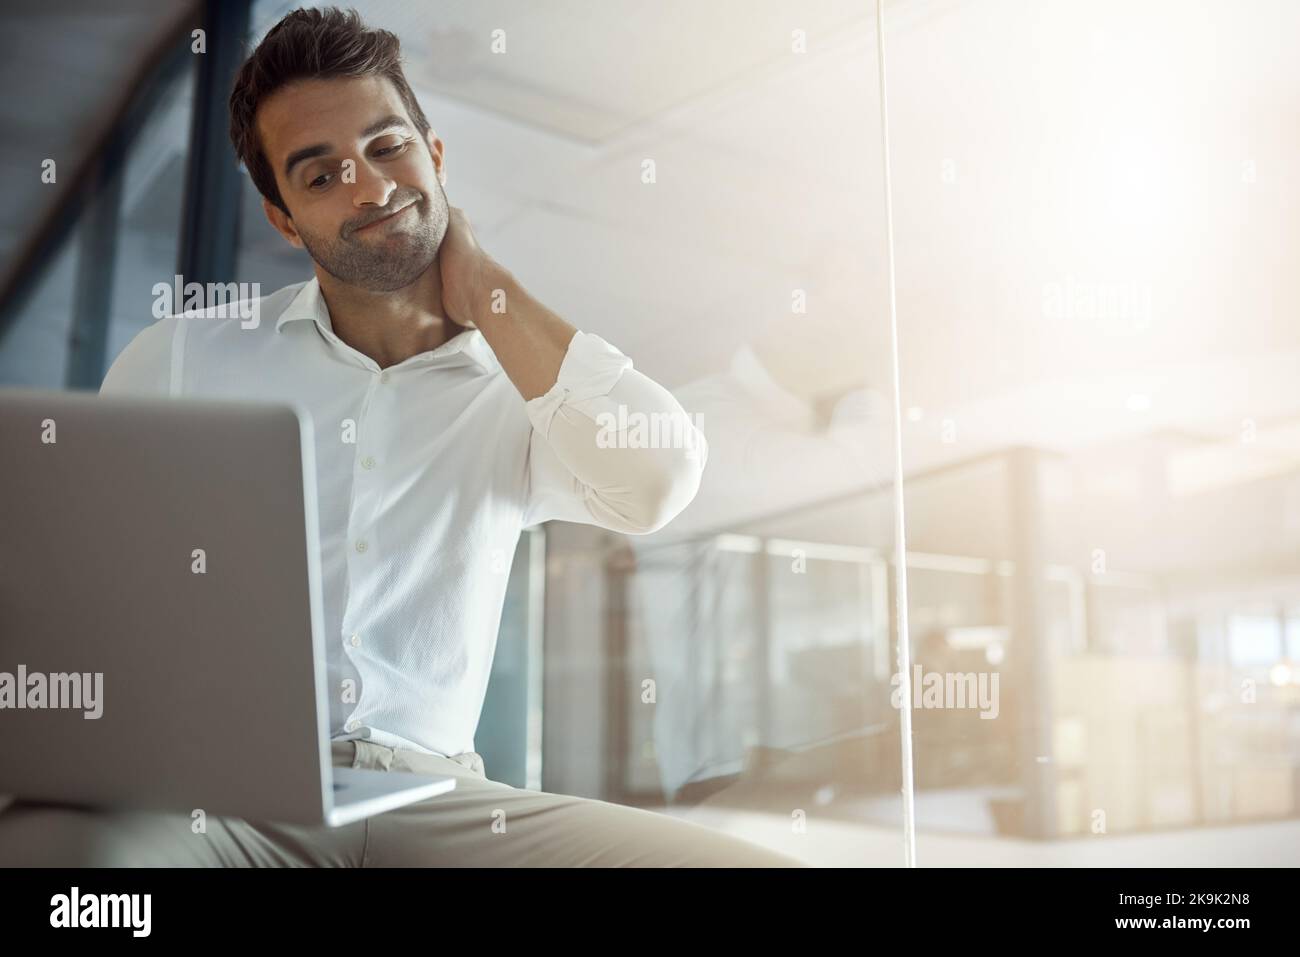 Ein hübscher junger Geschäftsmann sieht unsicher aus, während er im Büro an seinem Laptop arbeitet. Stockfoto